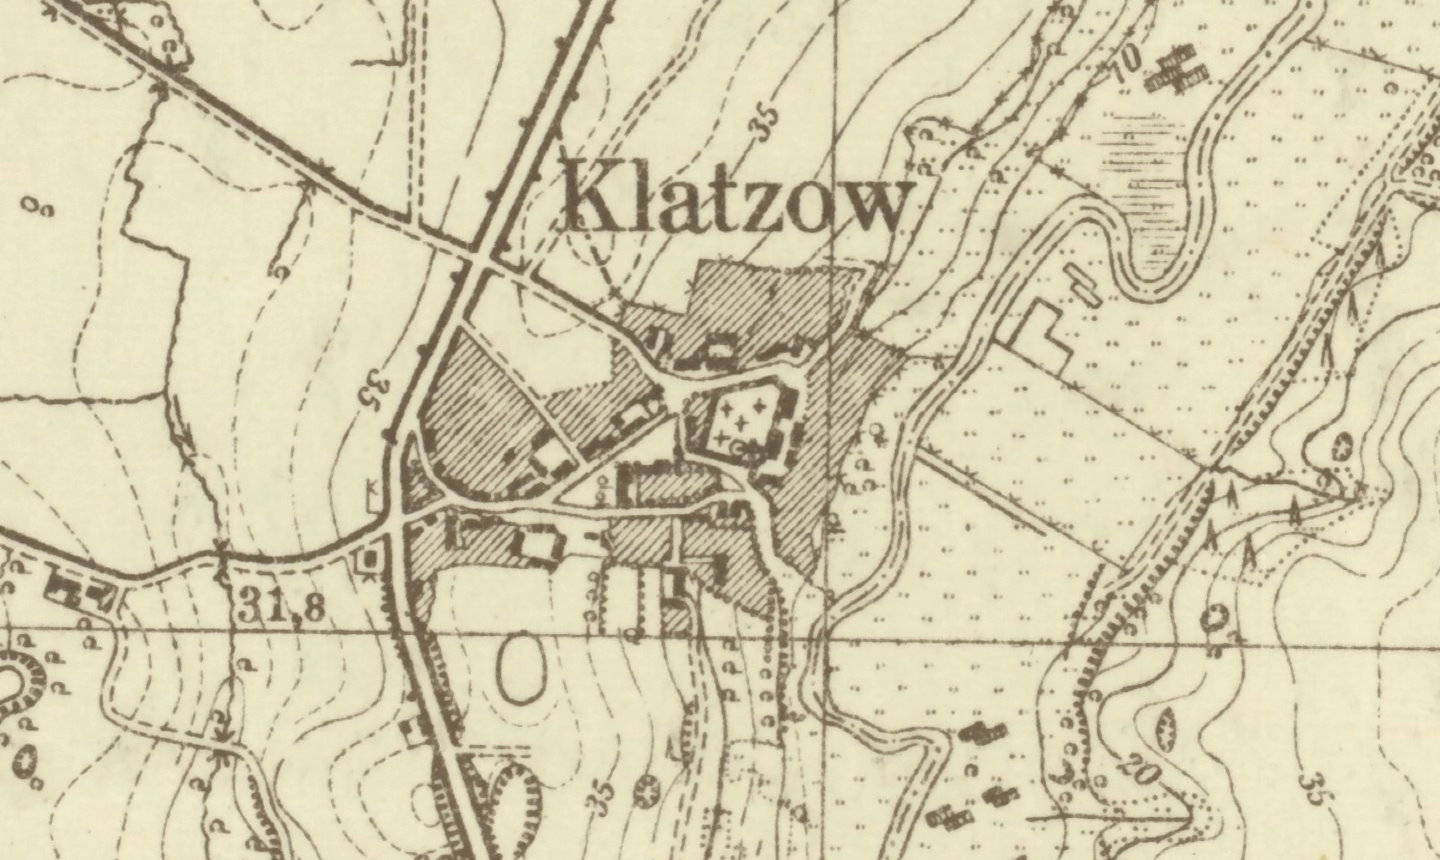 Das 1,5 km nördlich von Altentreptow, unmittelbar an der Tollense gelegene Dorf Klatzow, wo sich das Kloster der Benediktinerinnen für wenige Jahre befand / MTB 2245 Gültz; Bearbeitung A. Kieseler